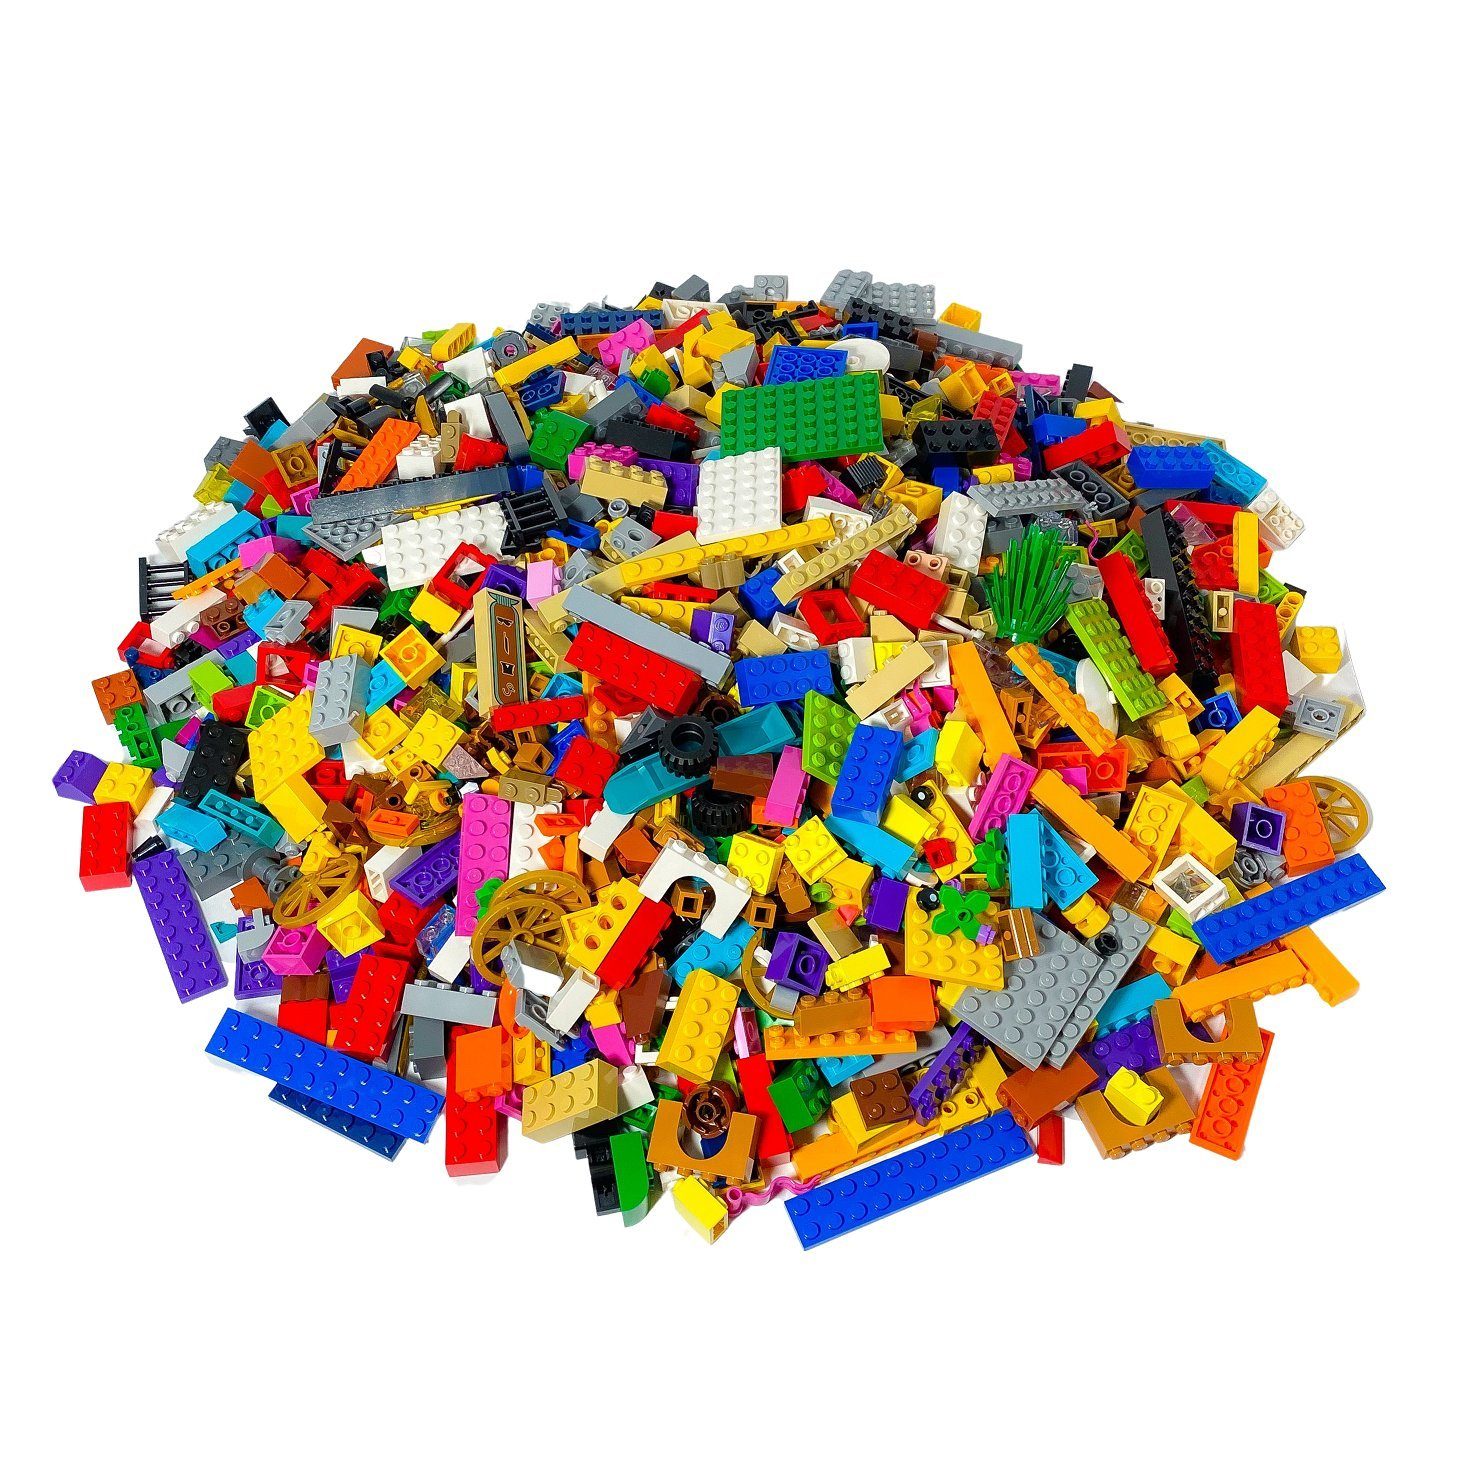 LEGO® Spielbausteine LEGO® Steine Bunt gemischt - 1000 gr. - ca. 1000 Stück  - Colorful bricks mix - NEU, (Creativ-Set, 1000 St), Made in Europe